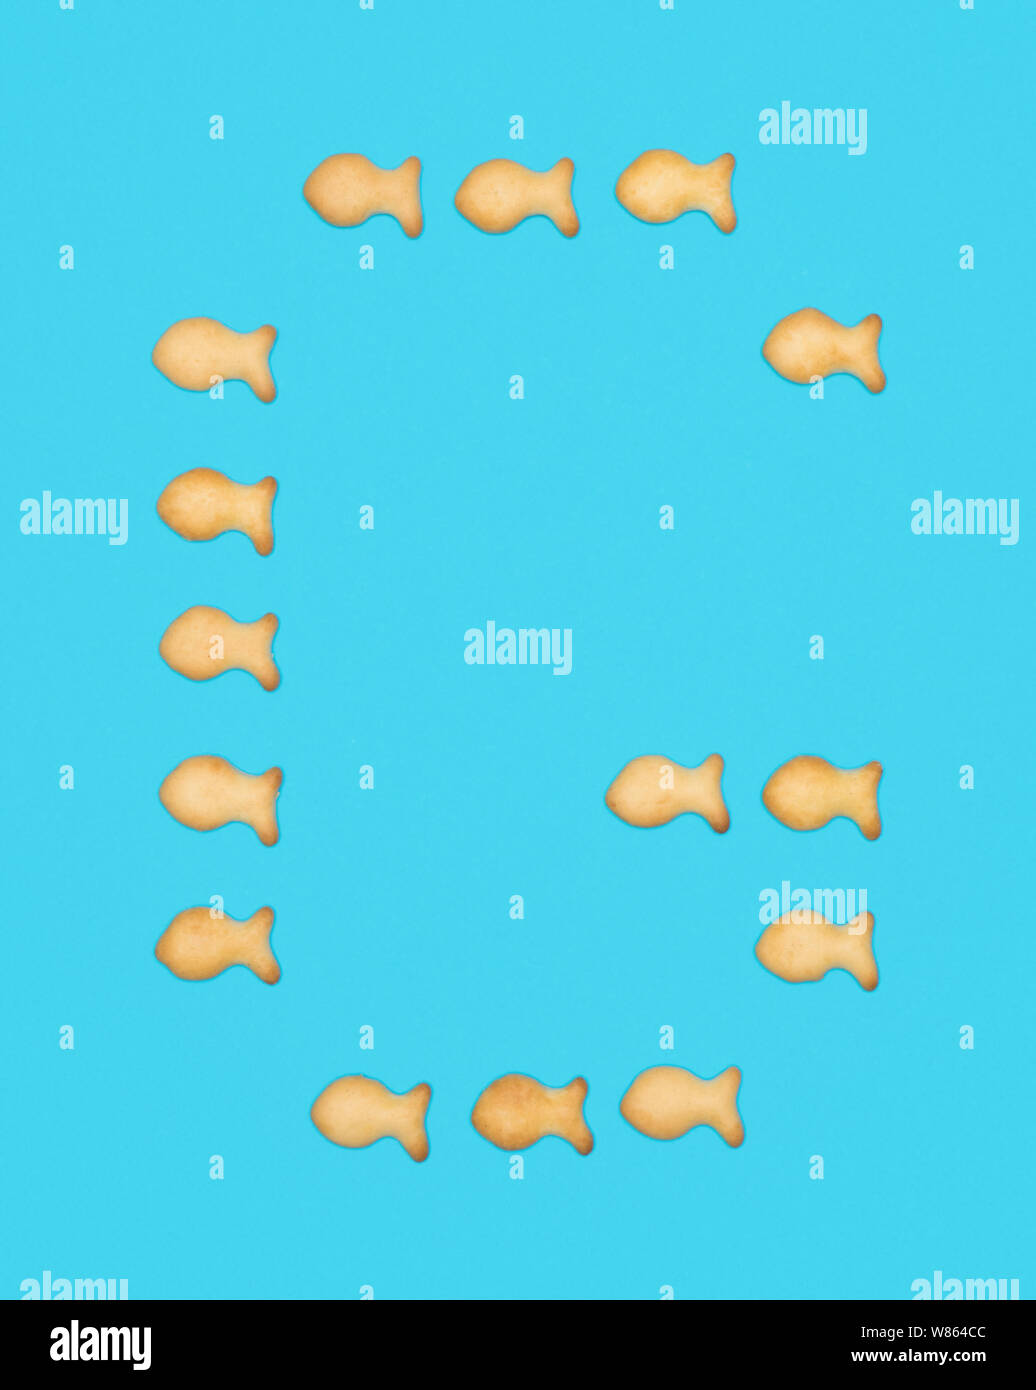 Lettera maiuscola G alfabeto latino da biscotti a forma di pesce su uno sfondo blu Foto Stock